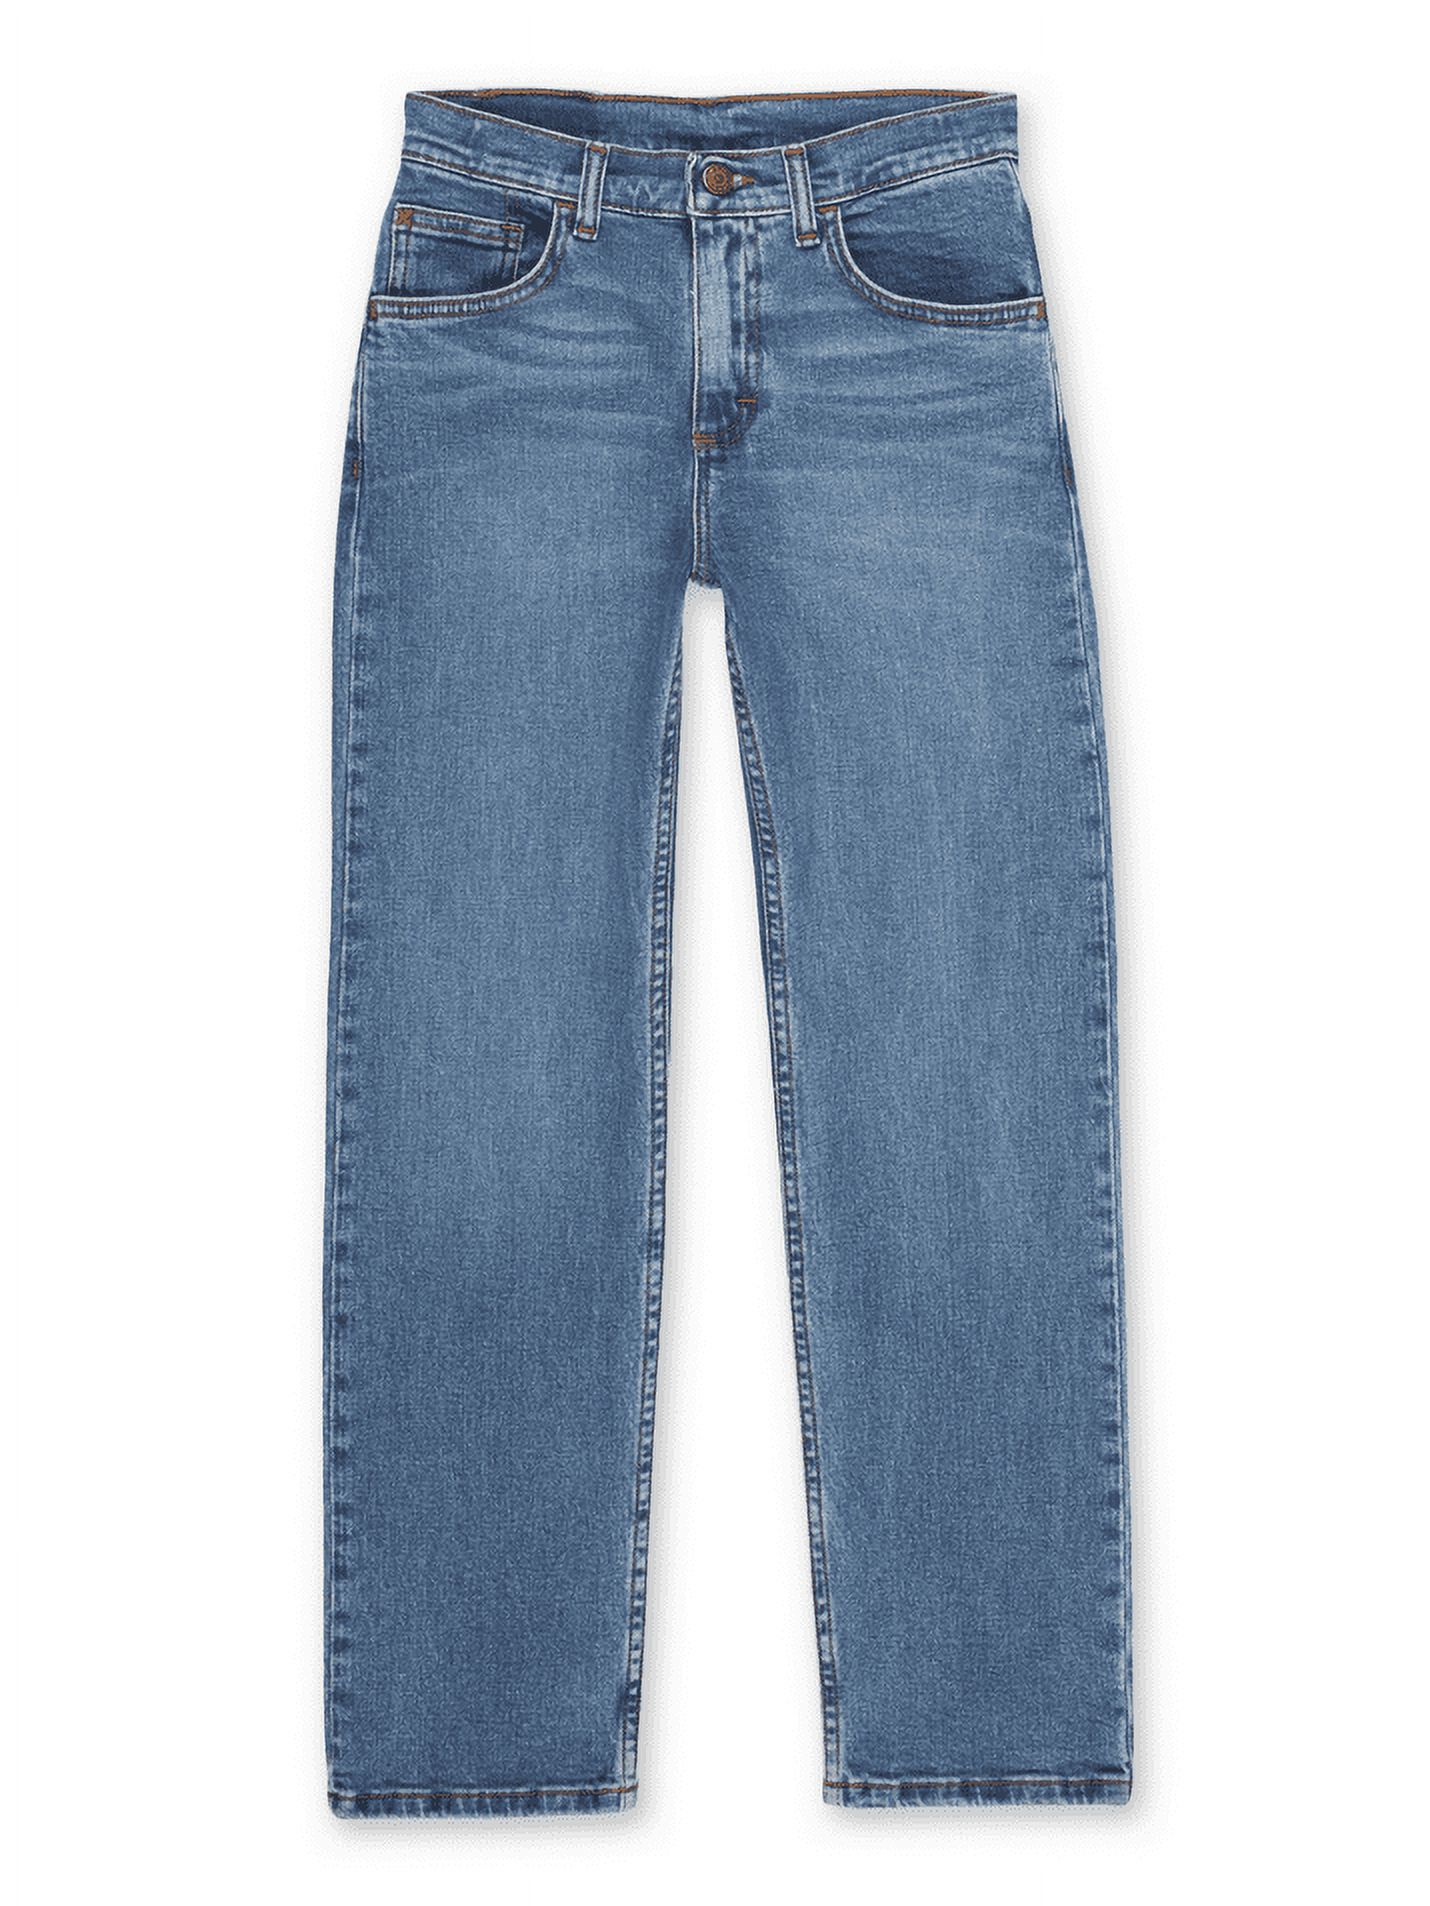 Wrangler Boys Straight Fit Denim Jeans, Sizes 4-18 Regular, Slim, & Husky - image 1 of 6